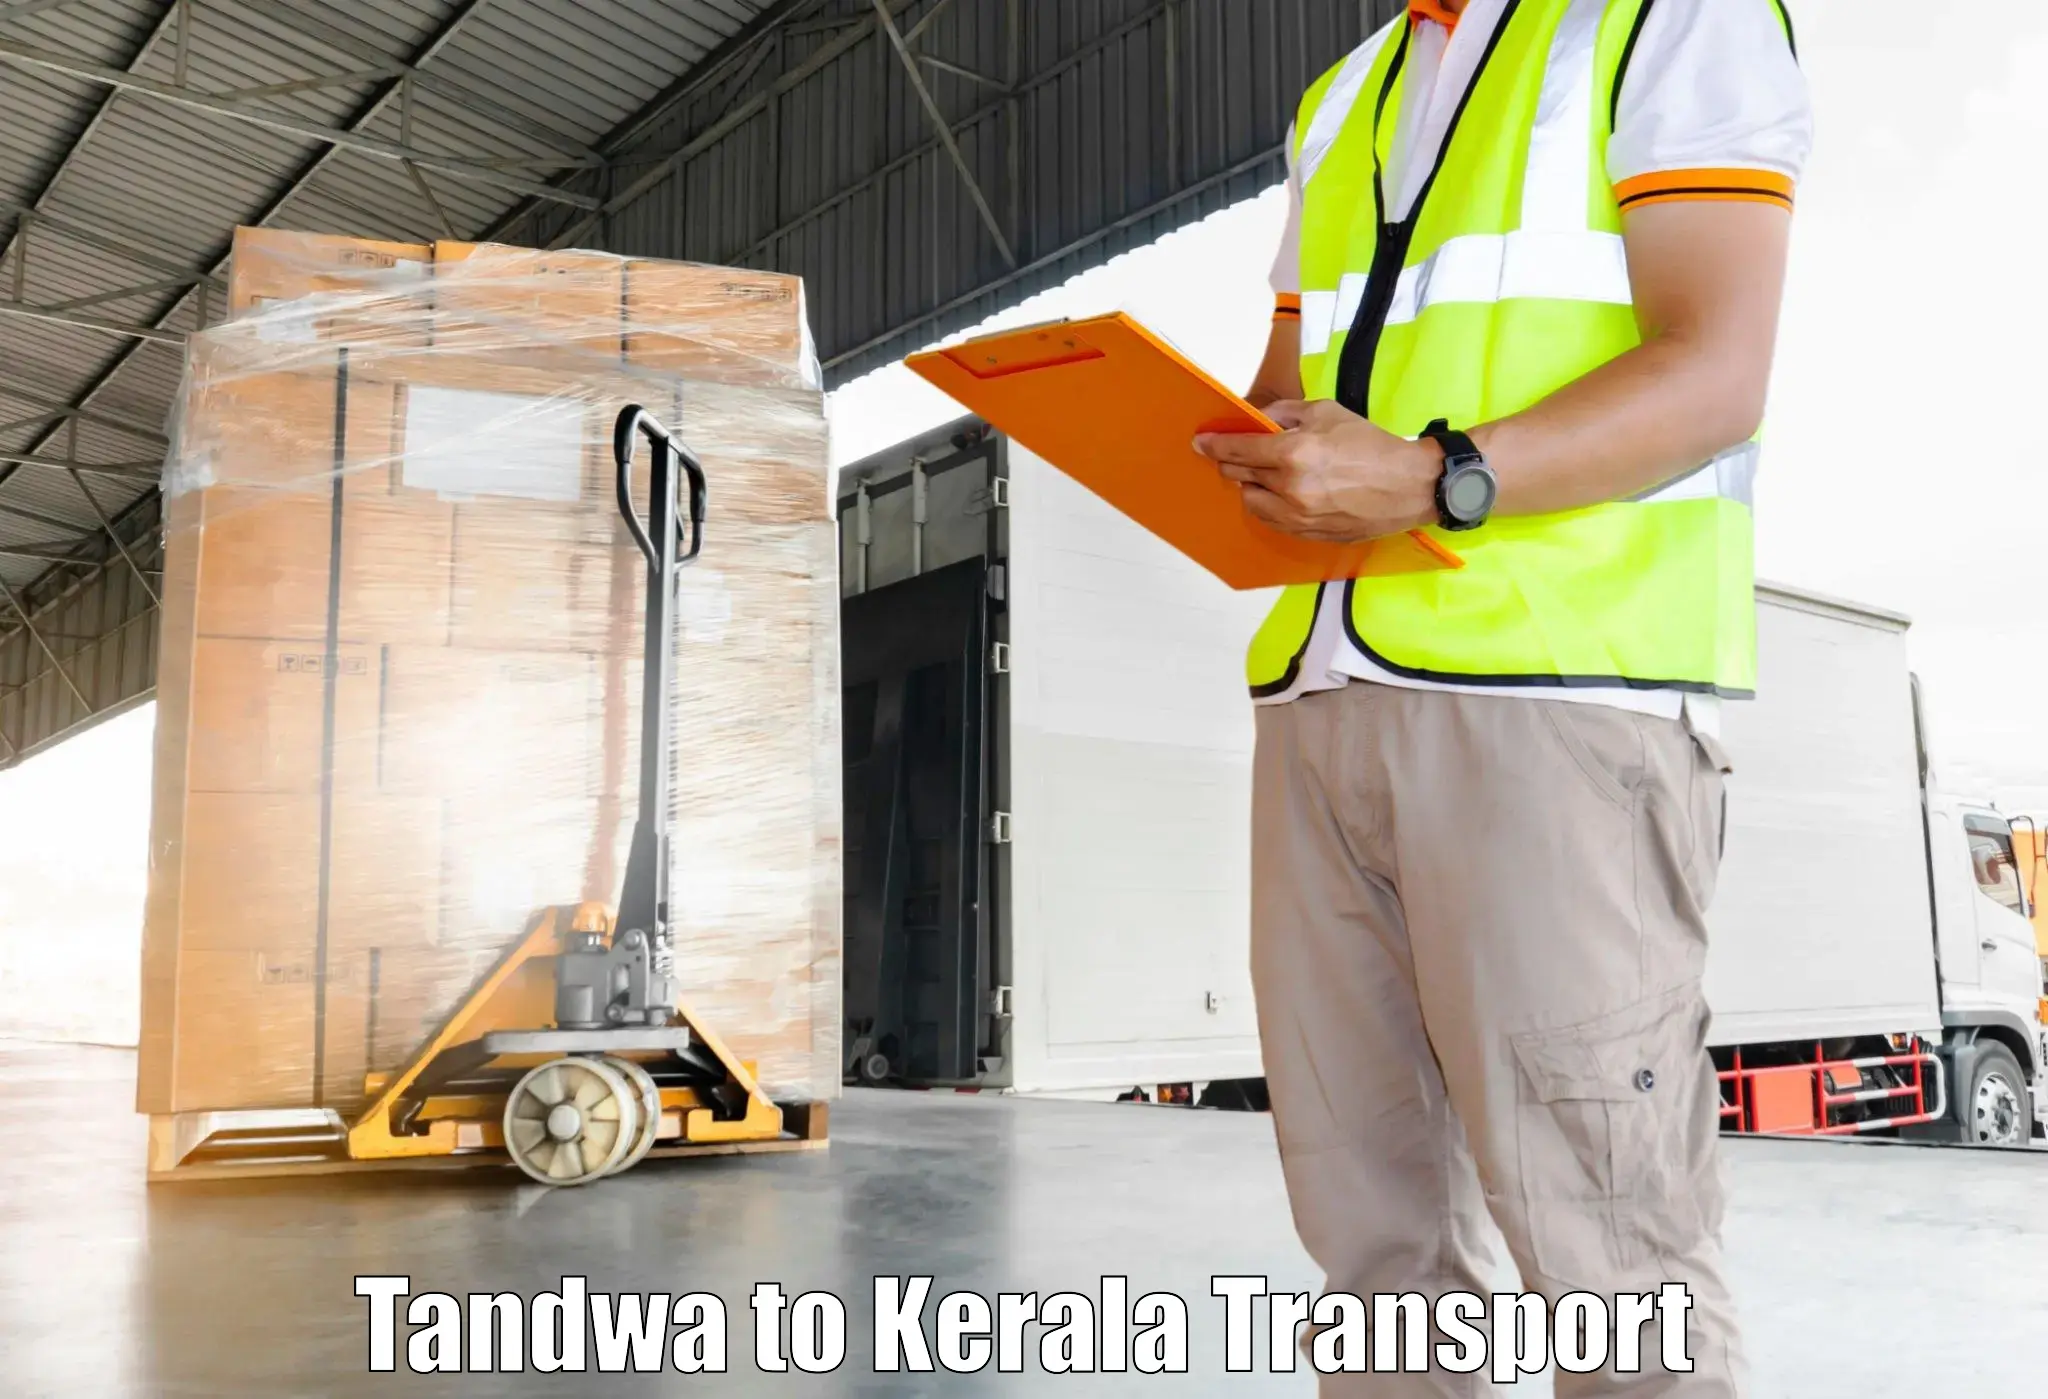 Air cargo transport services Tandwa to Manjeshwar